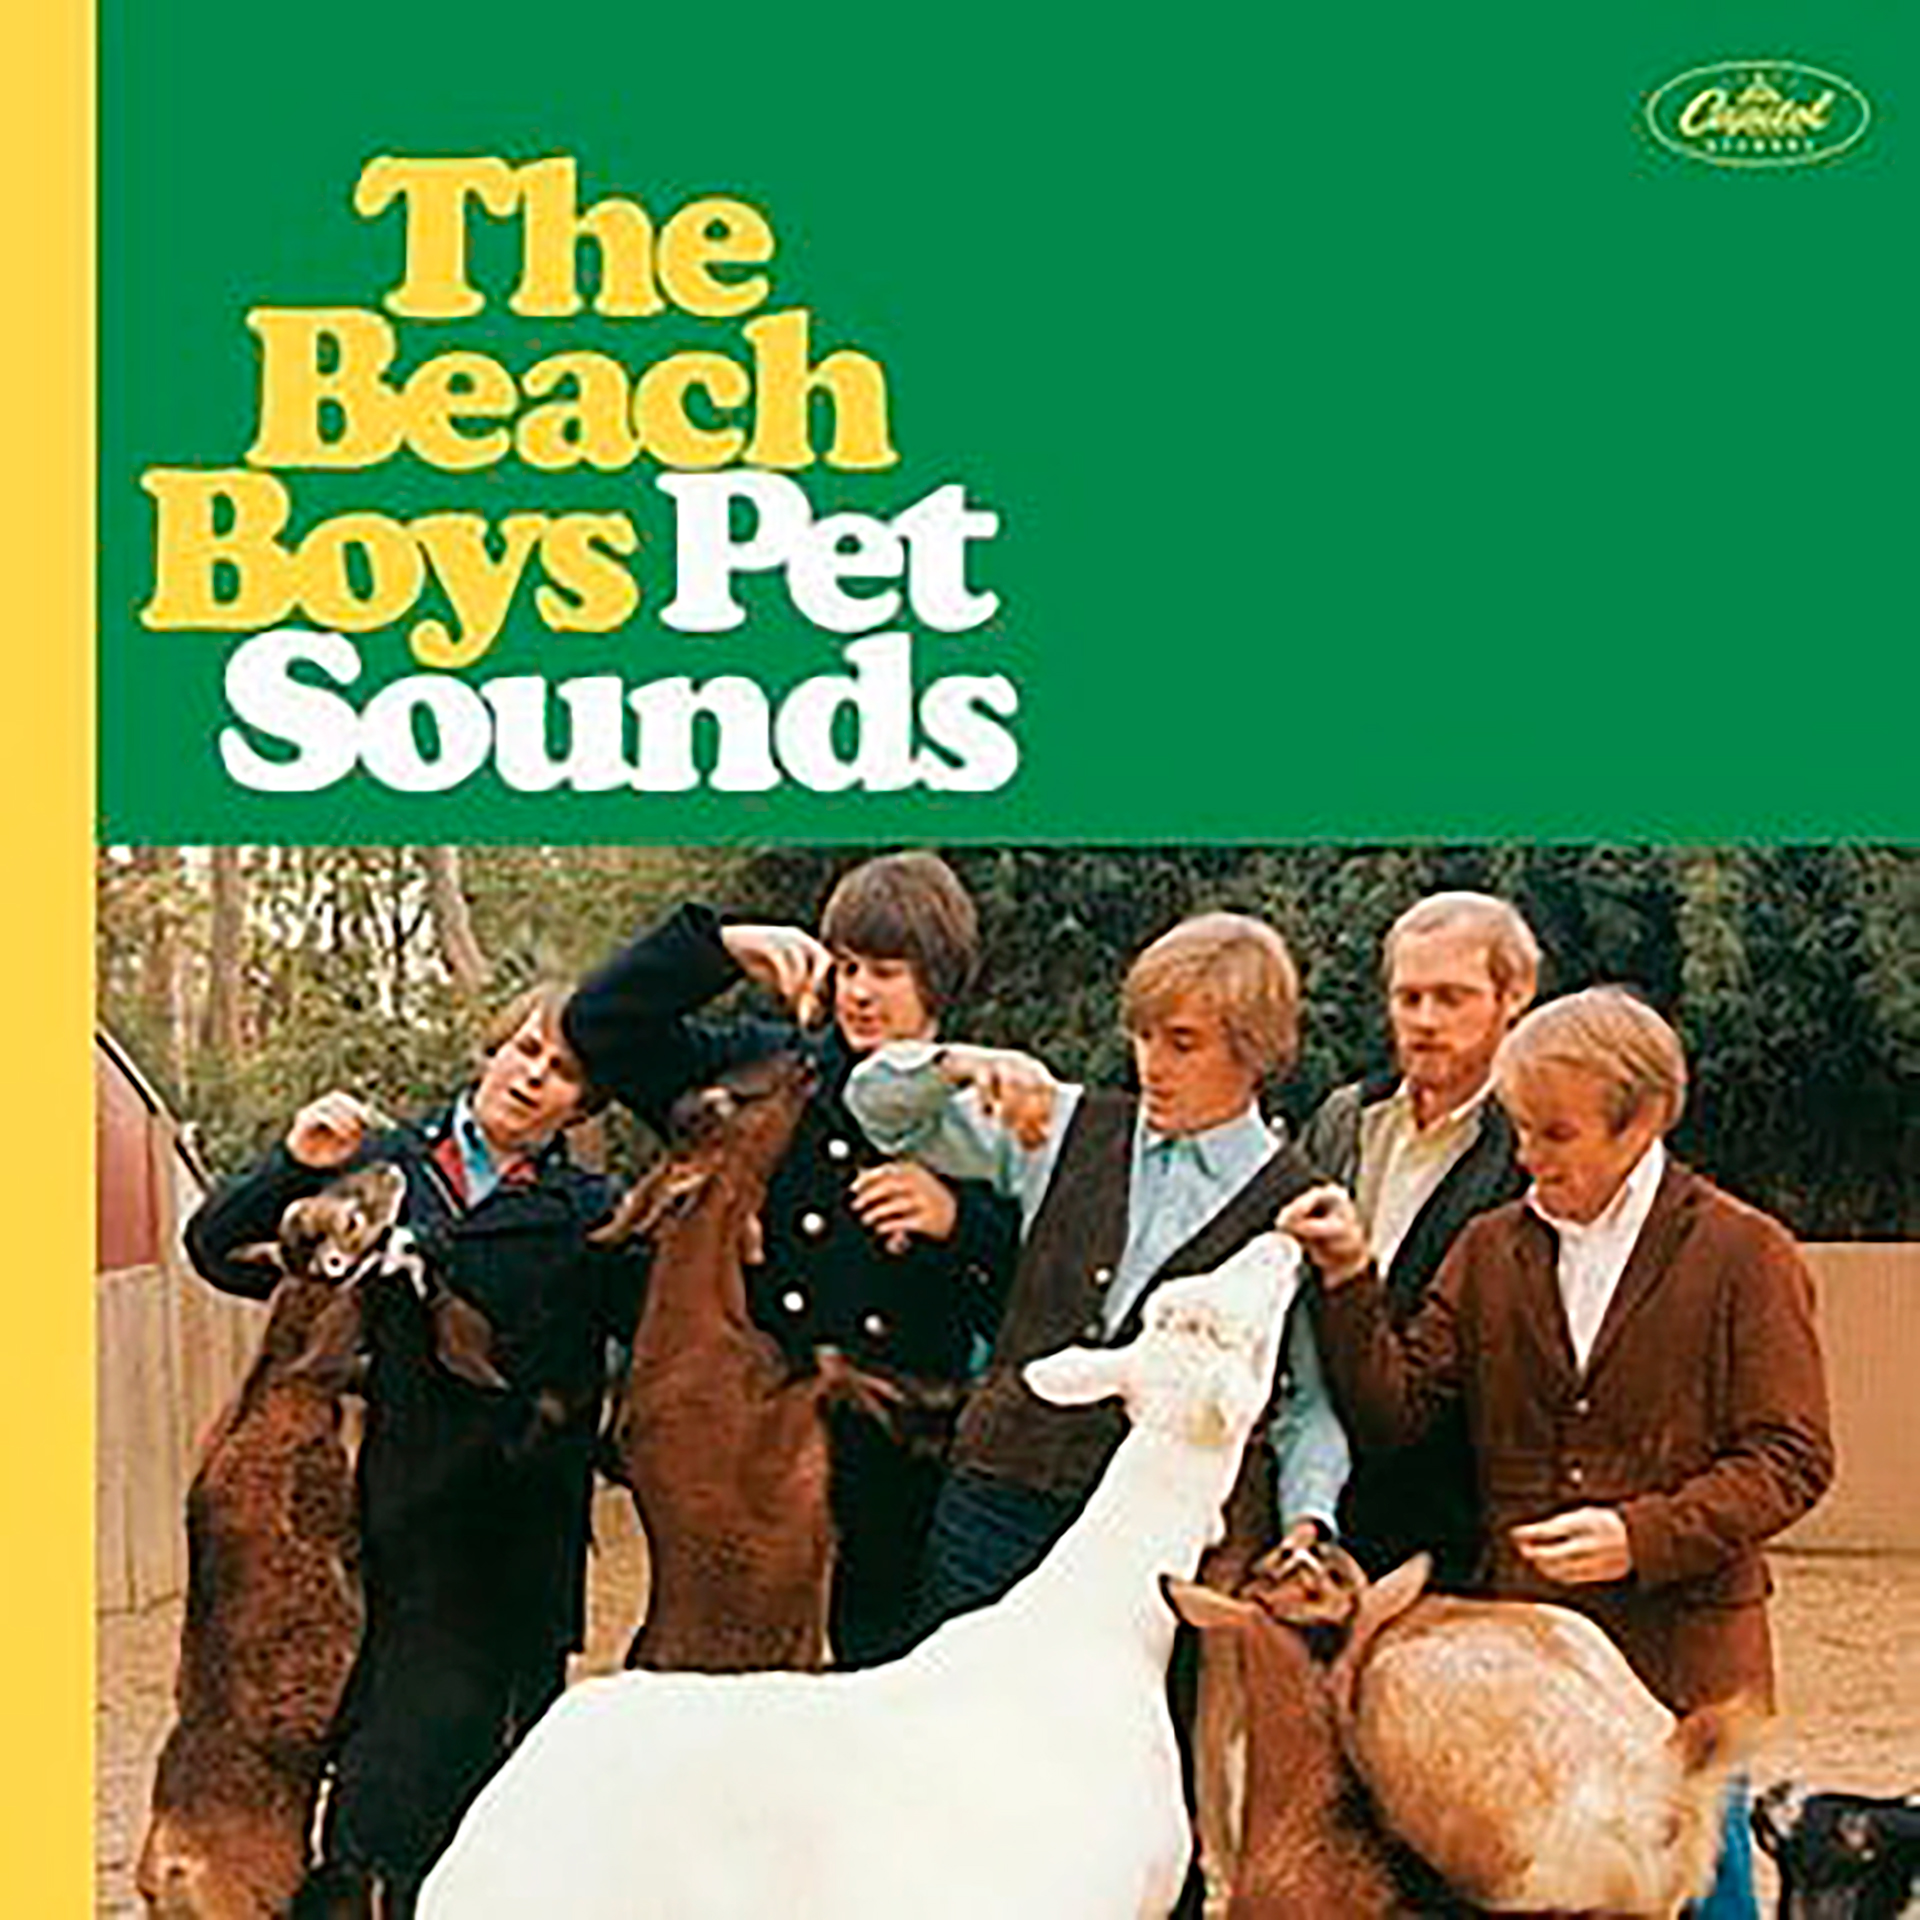 Pet Sounds fue la obra maestra de Brian Wilson y los Beach Boys. Fue el último proyecto en muchos años en ser producido exclusivamente por Brian Wilson. Después empezó su pronunciada caída